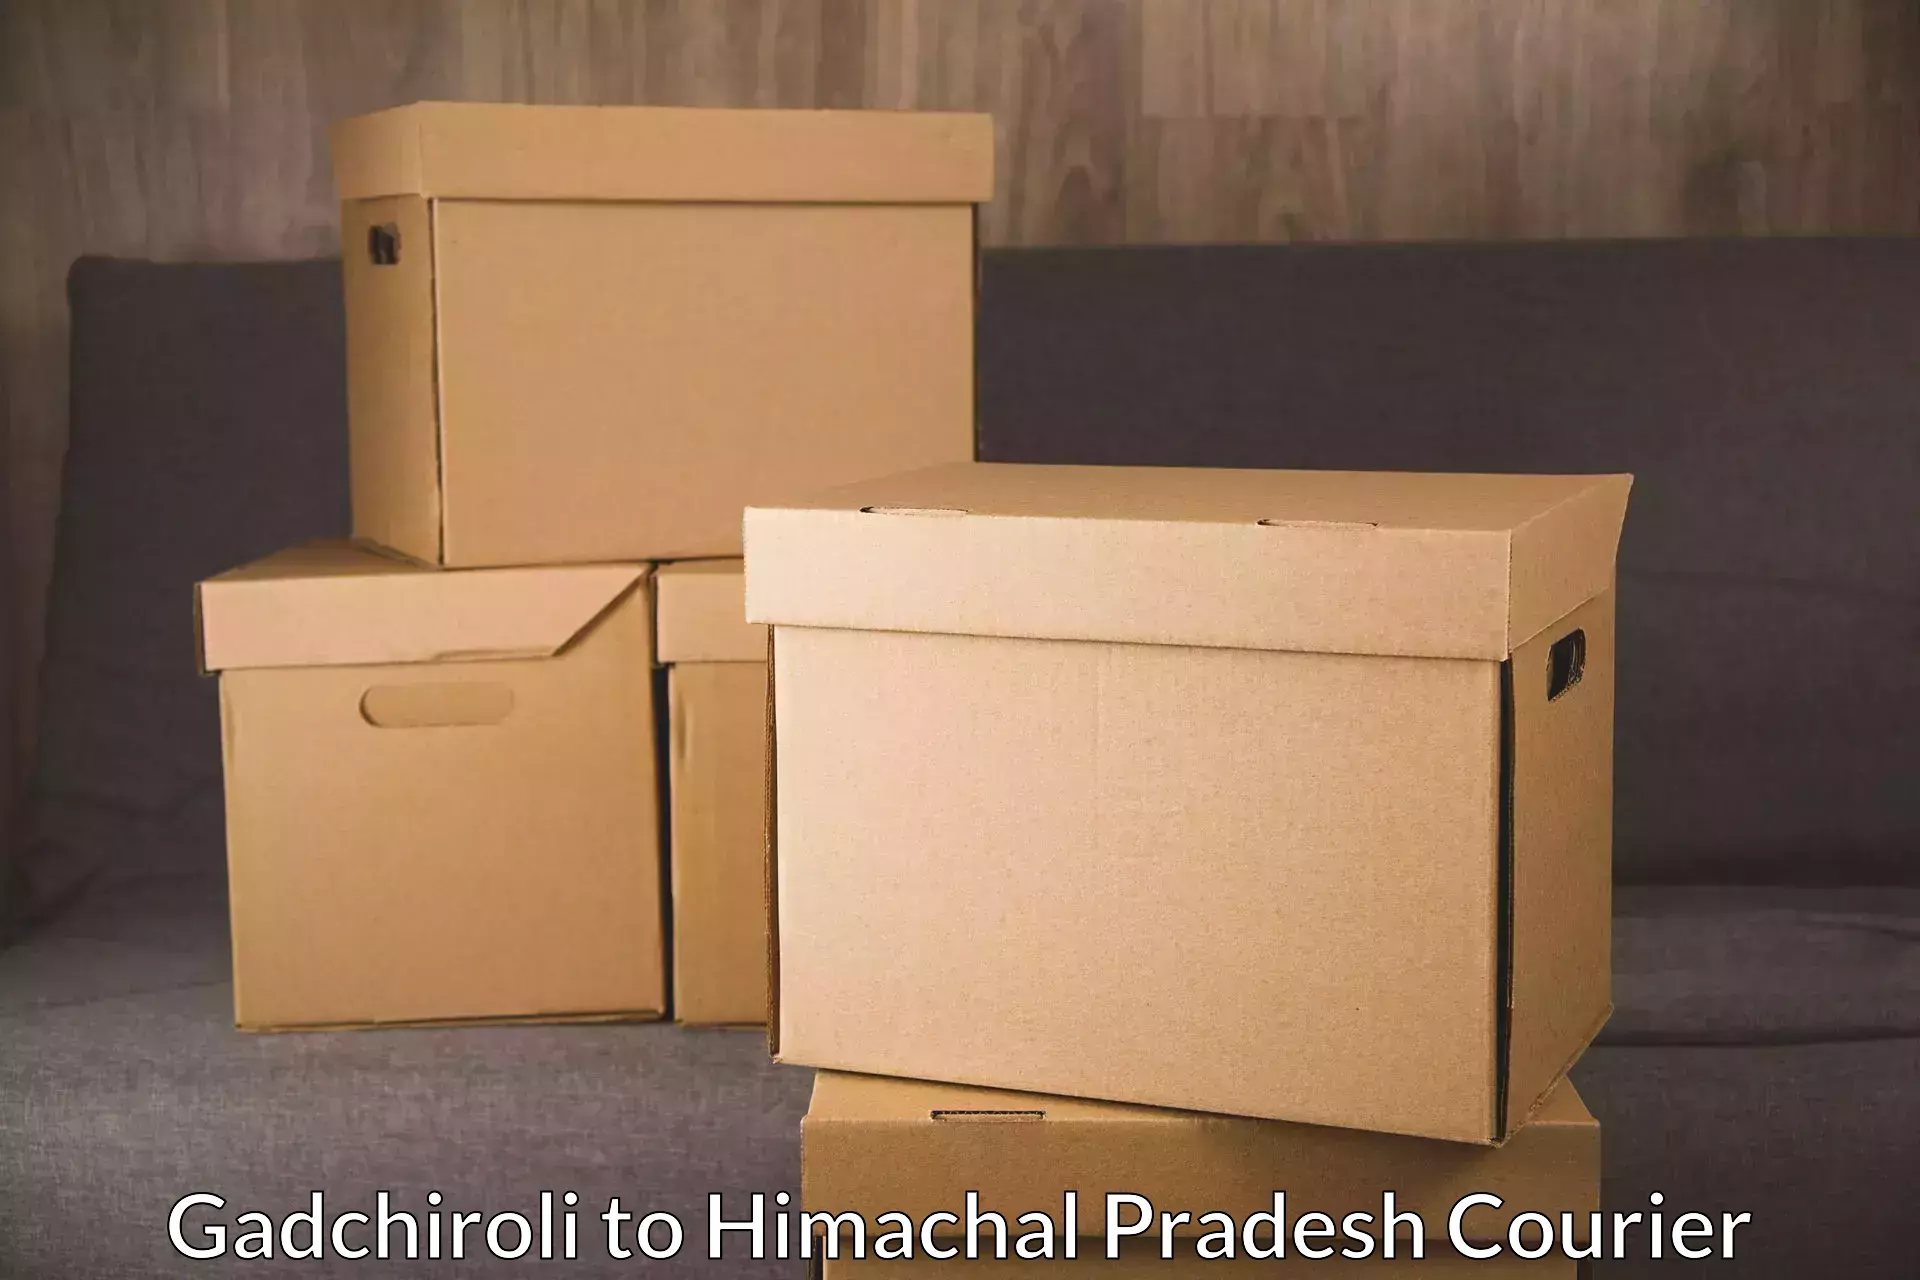 Professional courier handling Gadchiroli to Chopal